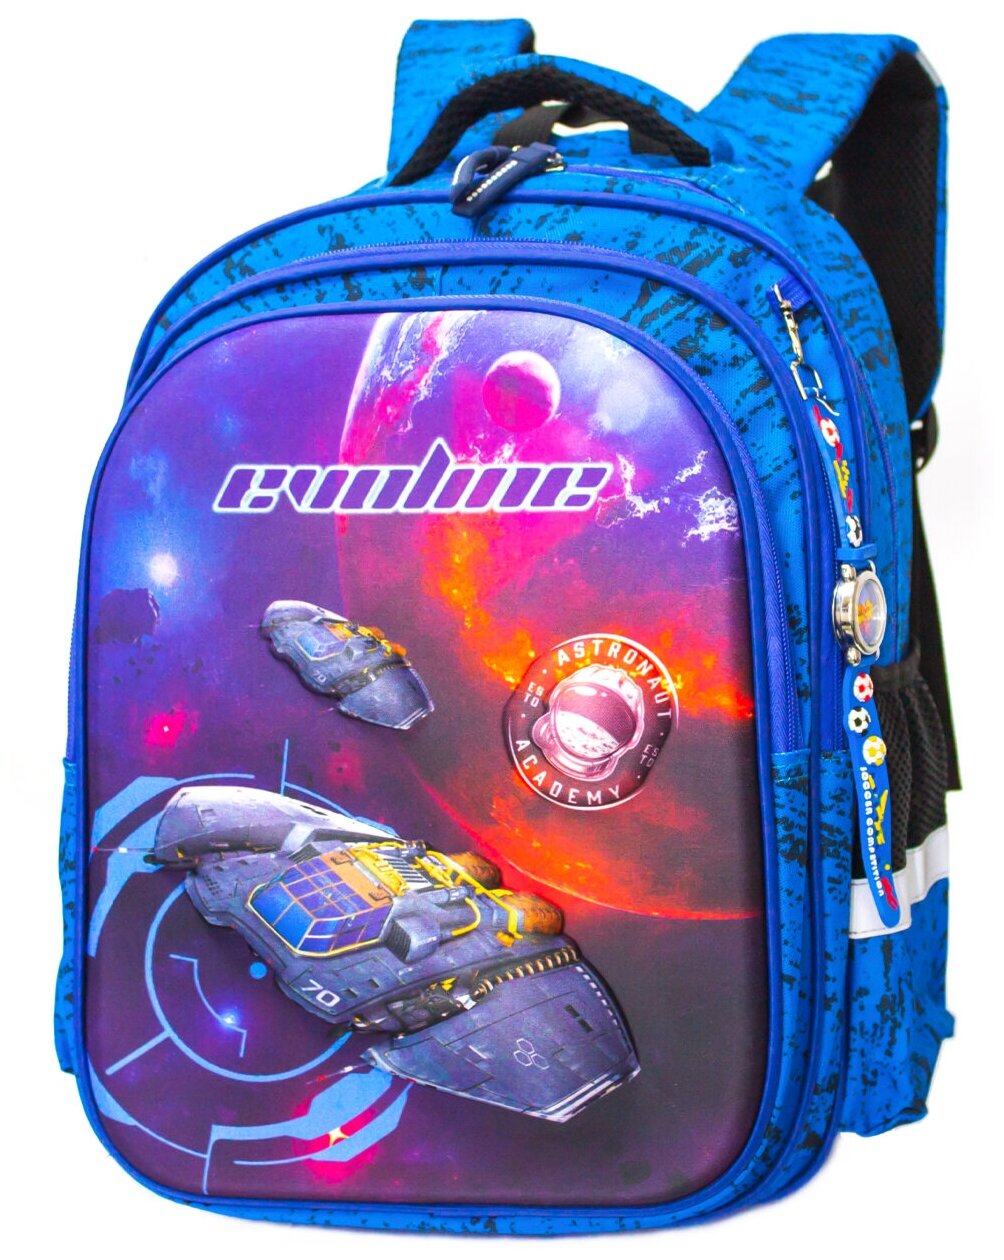 Рюкзак школьный для мальчика с 3D рисунком, Evoline, арт. S601-space